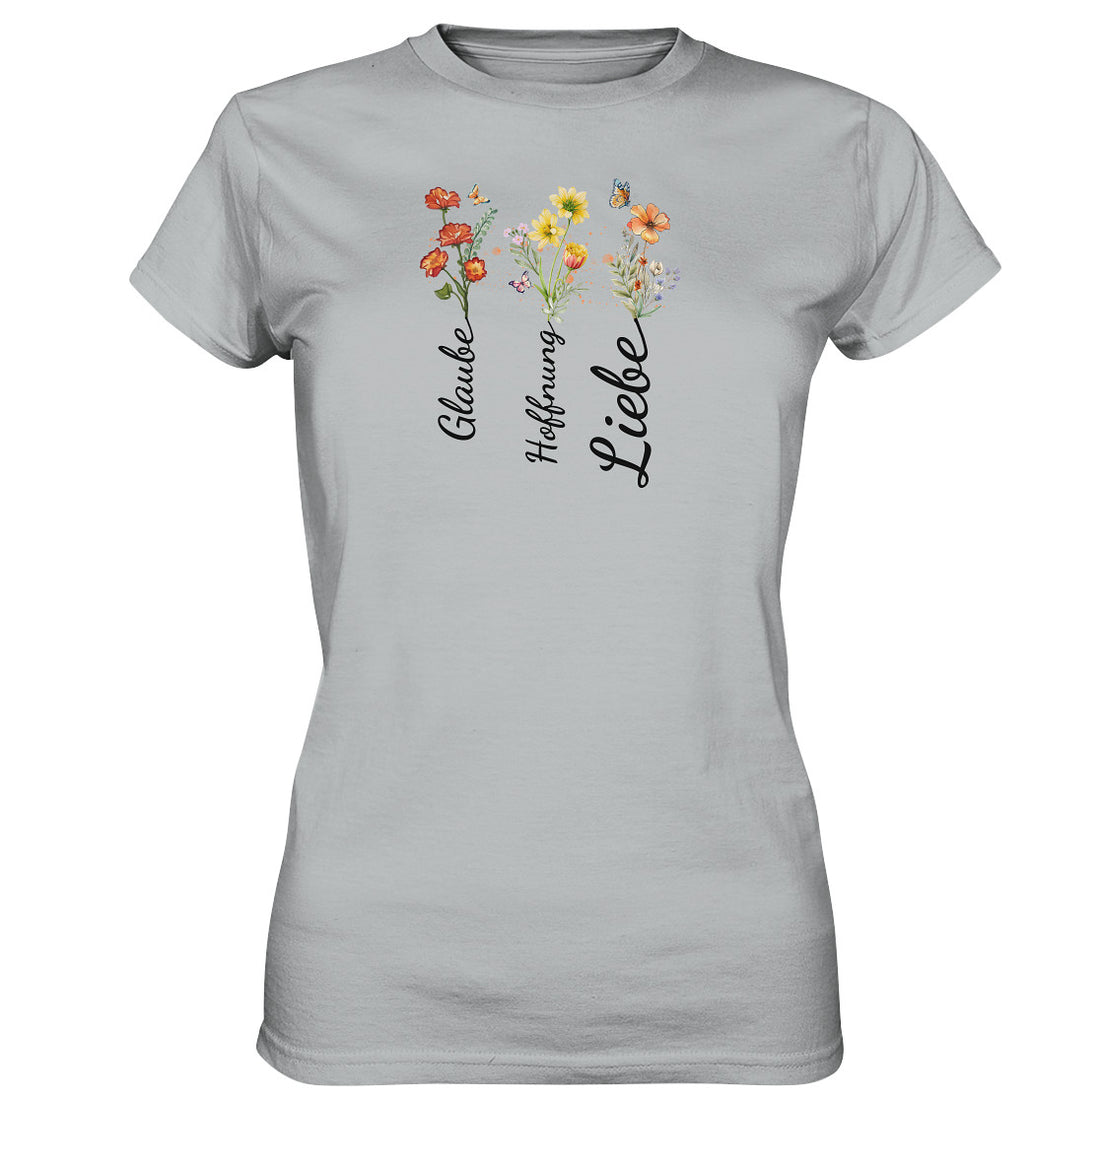 Glaube, Hoffnung, Liebe - Ladies Premium Shirt